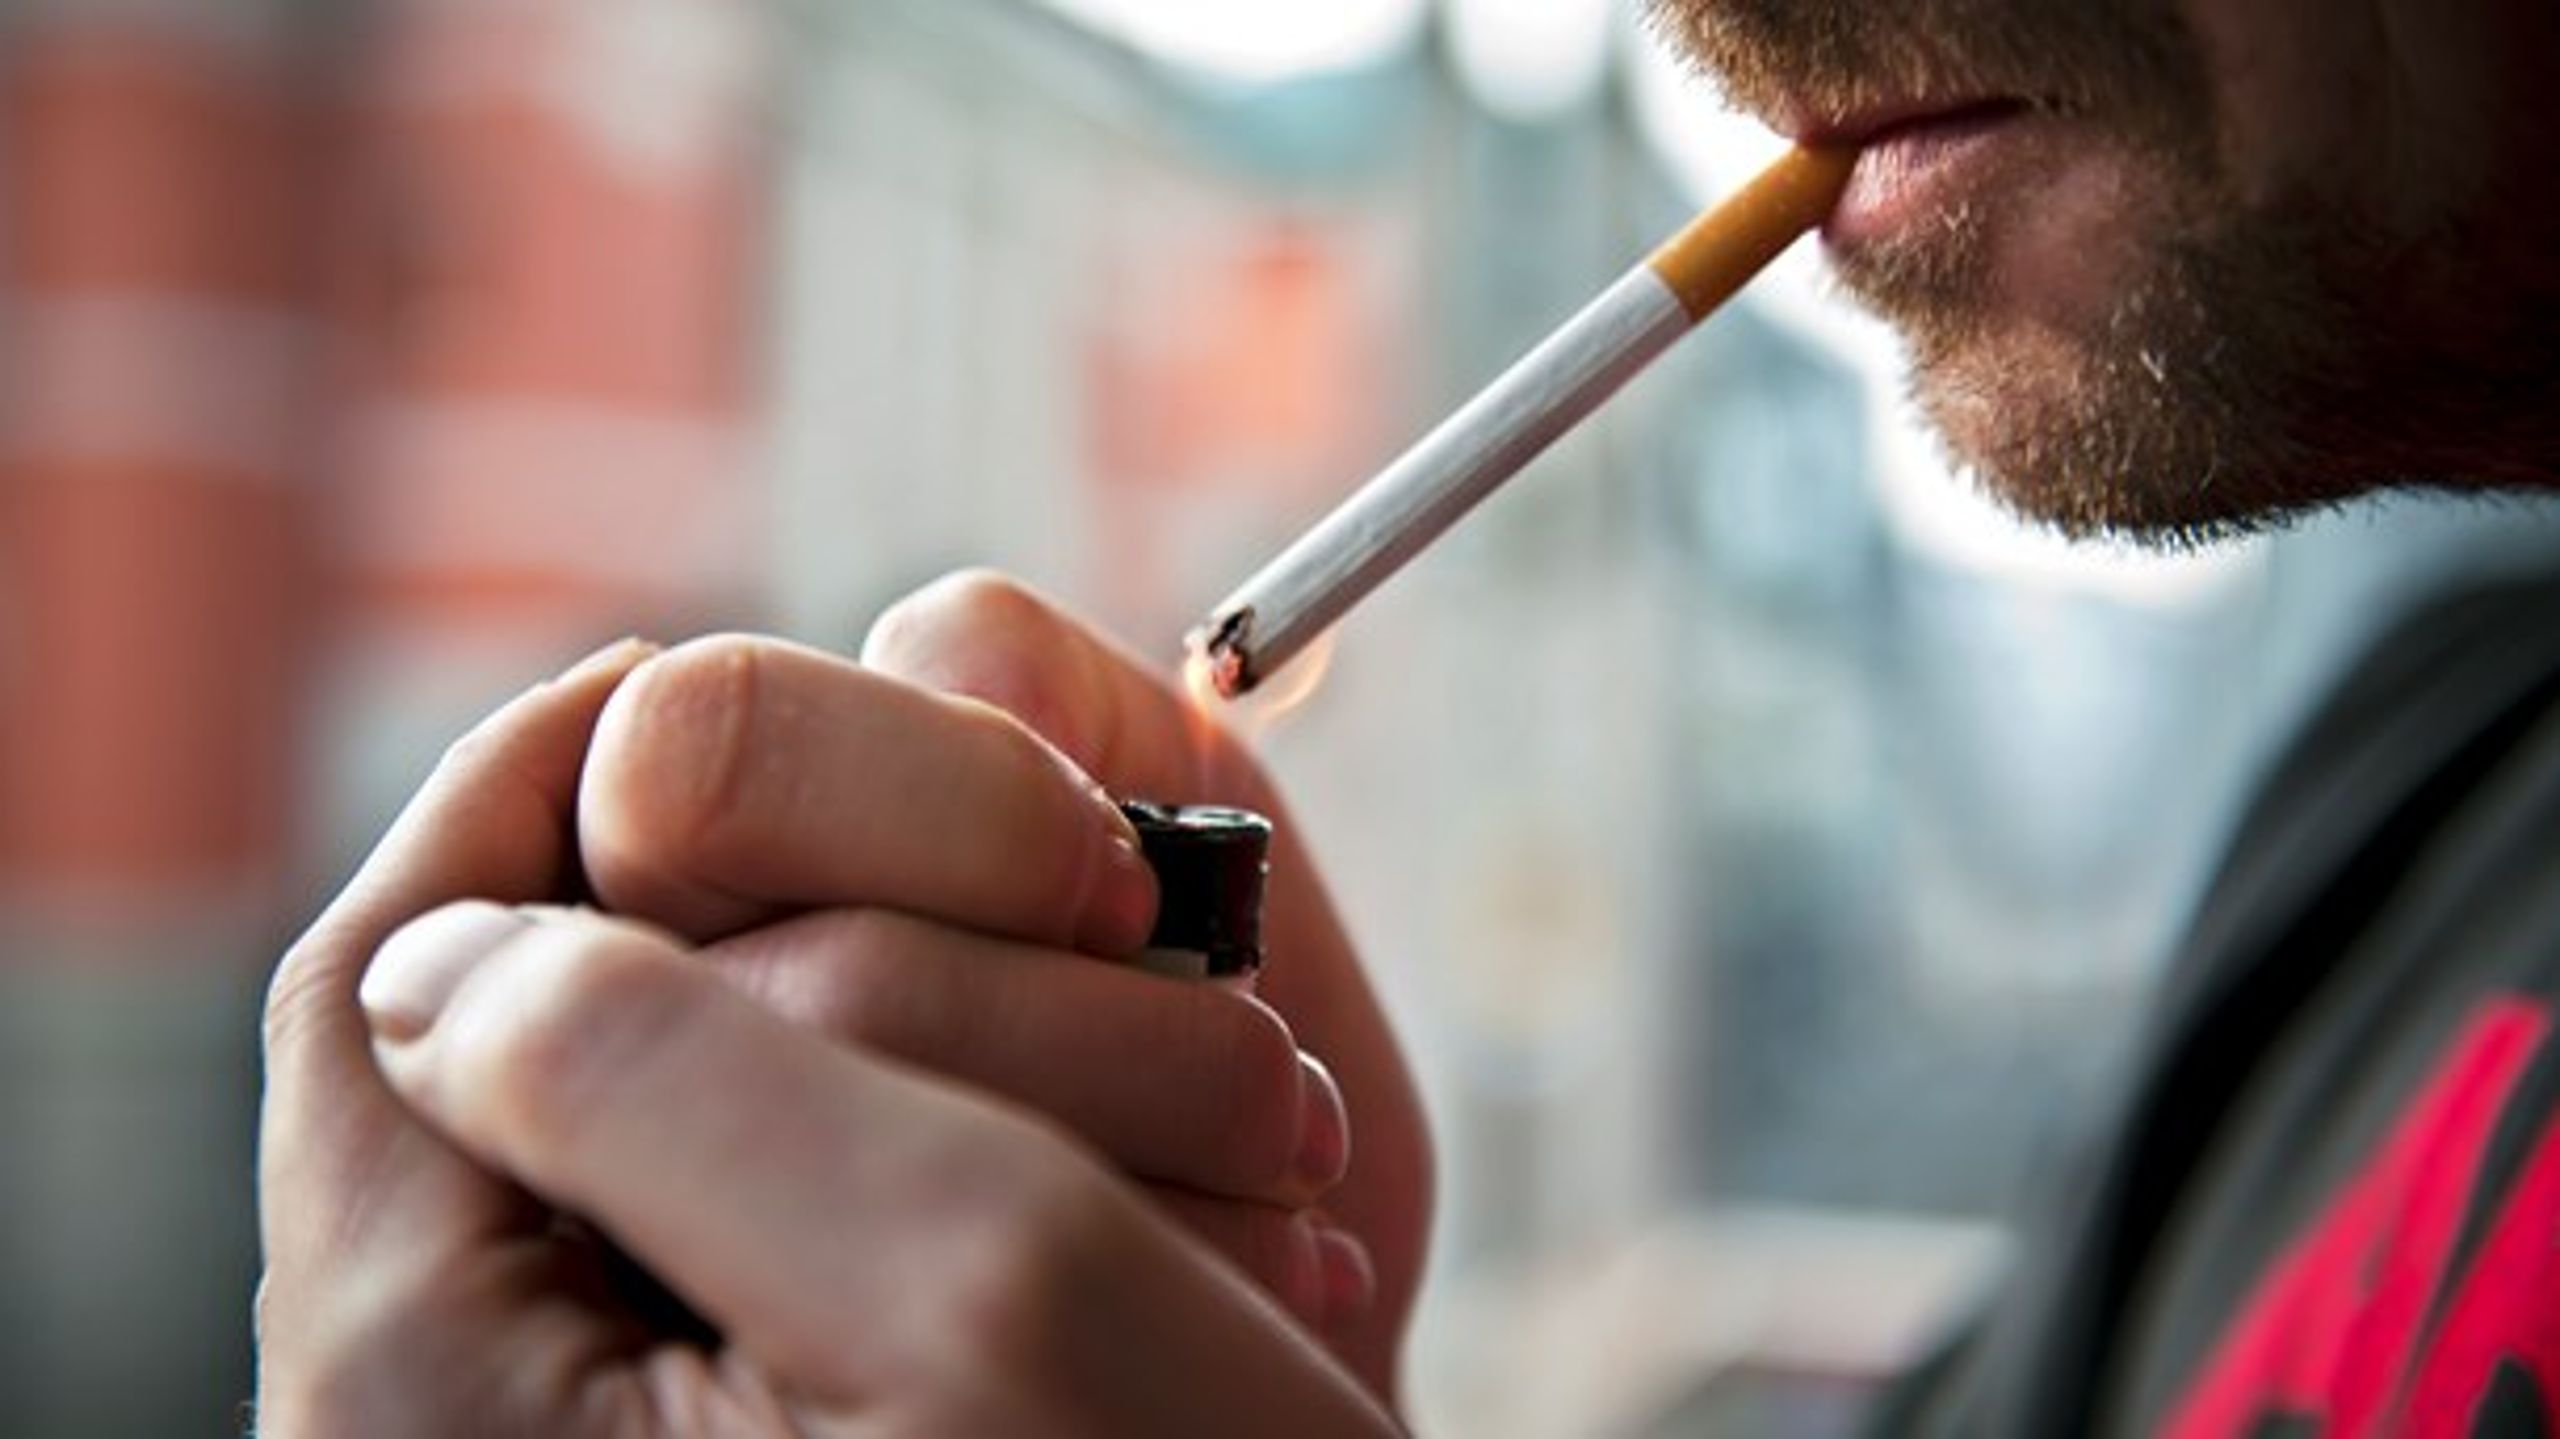 Flere organisasjoner tar til orde for en rekke forslag som vil gjøre det dyrere og vanskeligere å få tatt seg en røy. Forslagene fremmes fordi tobakk tar liv.